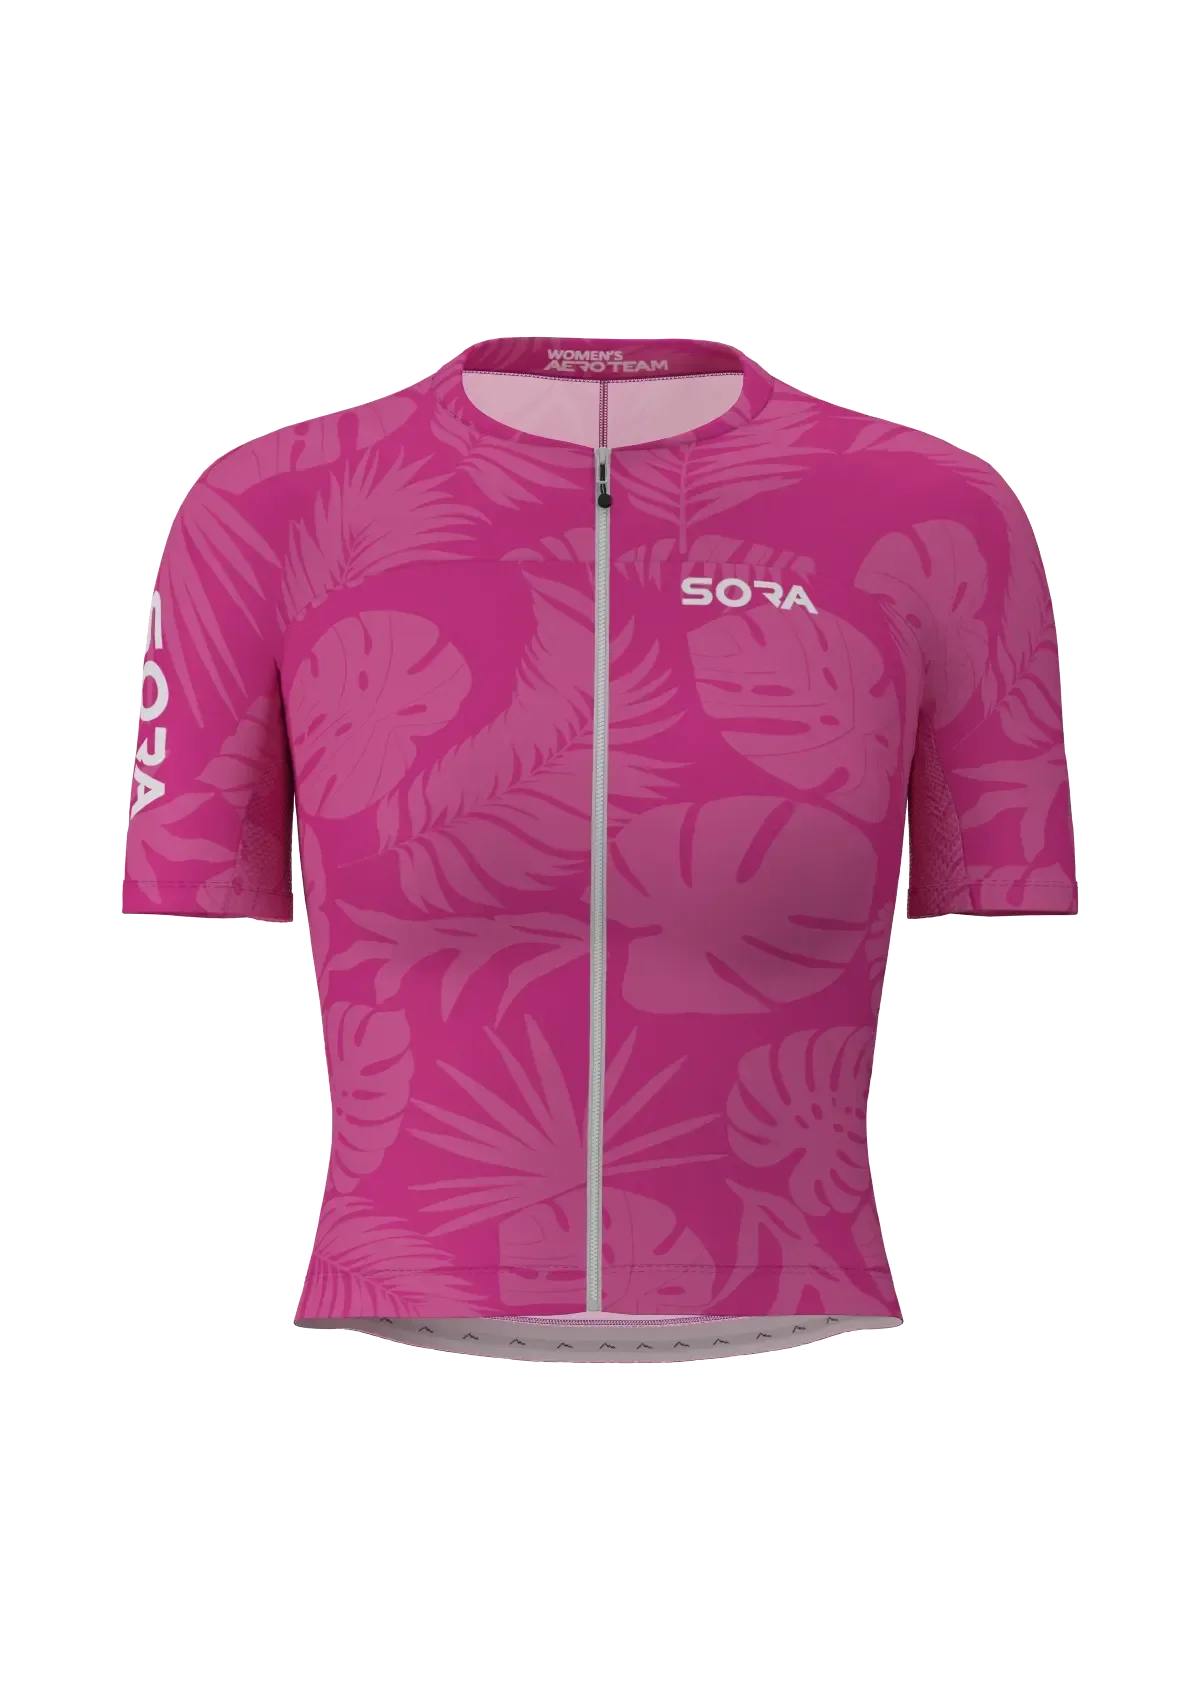 Aero Team Damen Fahrrad Trikot Pink